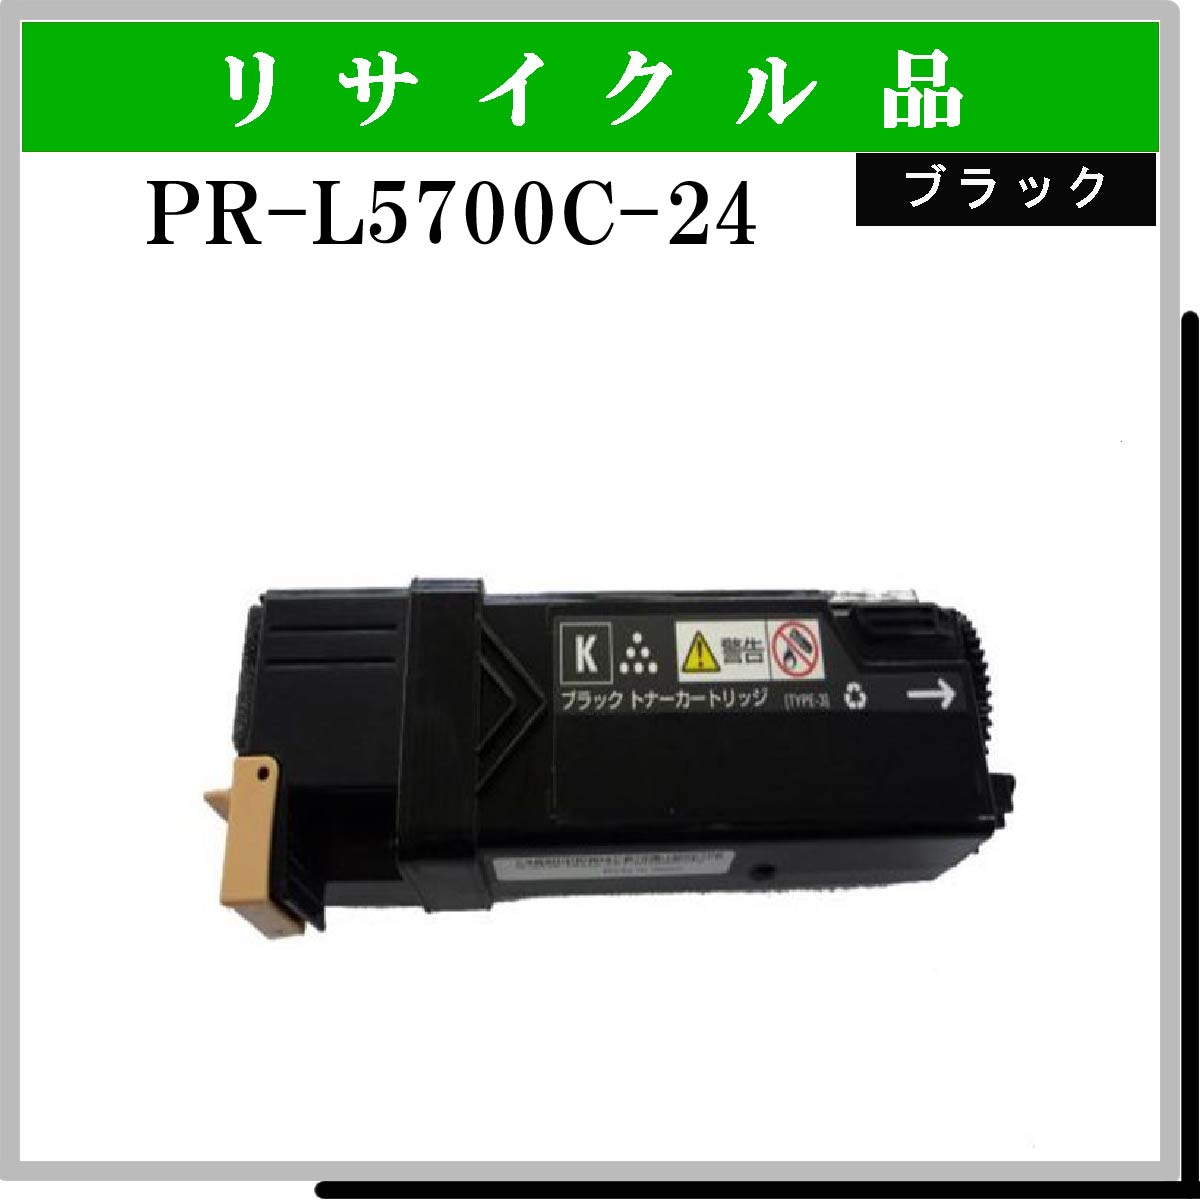 PR-L5700C-24